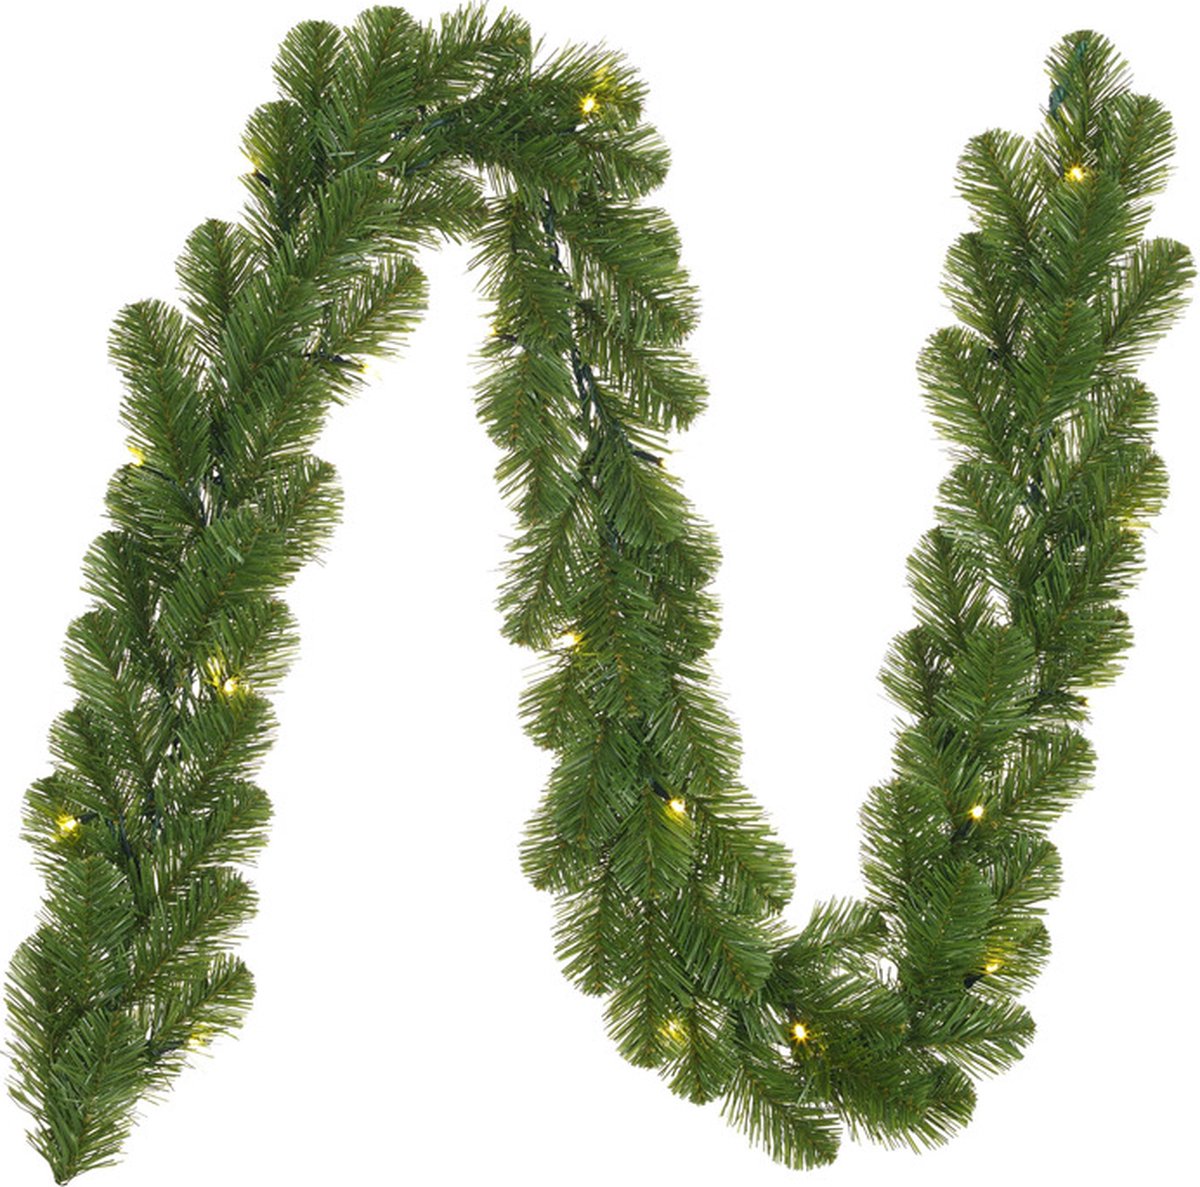 3x stuks dennenslingers groen met kerstverlichting 20 x 180 cm - Verlichte kerstslingers / dennen takken slingers